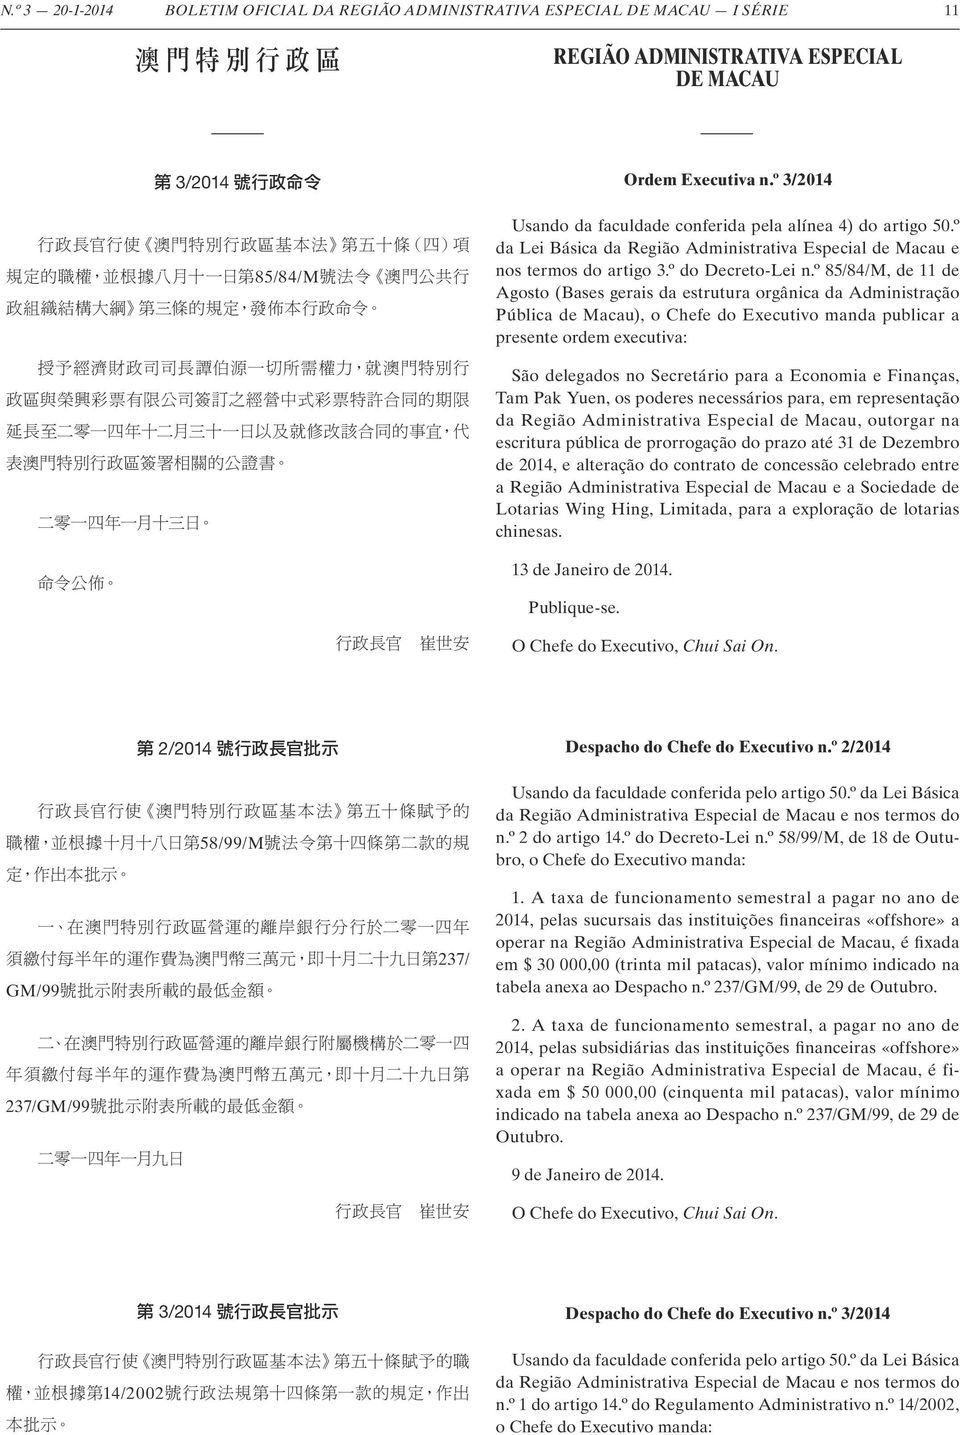 º 85/84/M, de 11 de Agosto (Bases gerais da estrutura orgânica da Administração Pública de Macau), o Chefe do Executivo manda publicar a presente ordem executiva: São delegados no Secretário para a